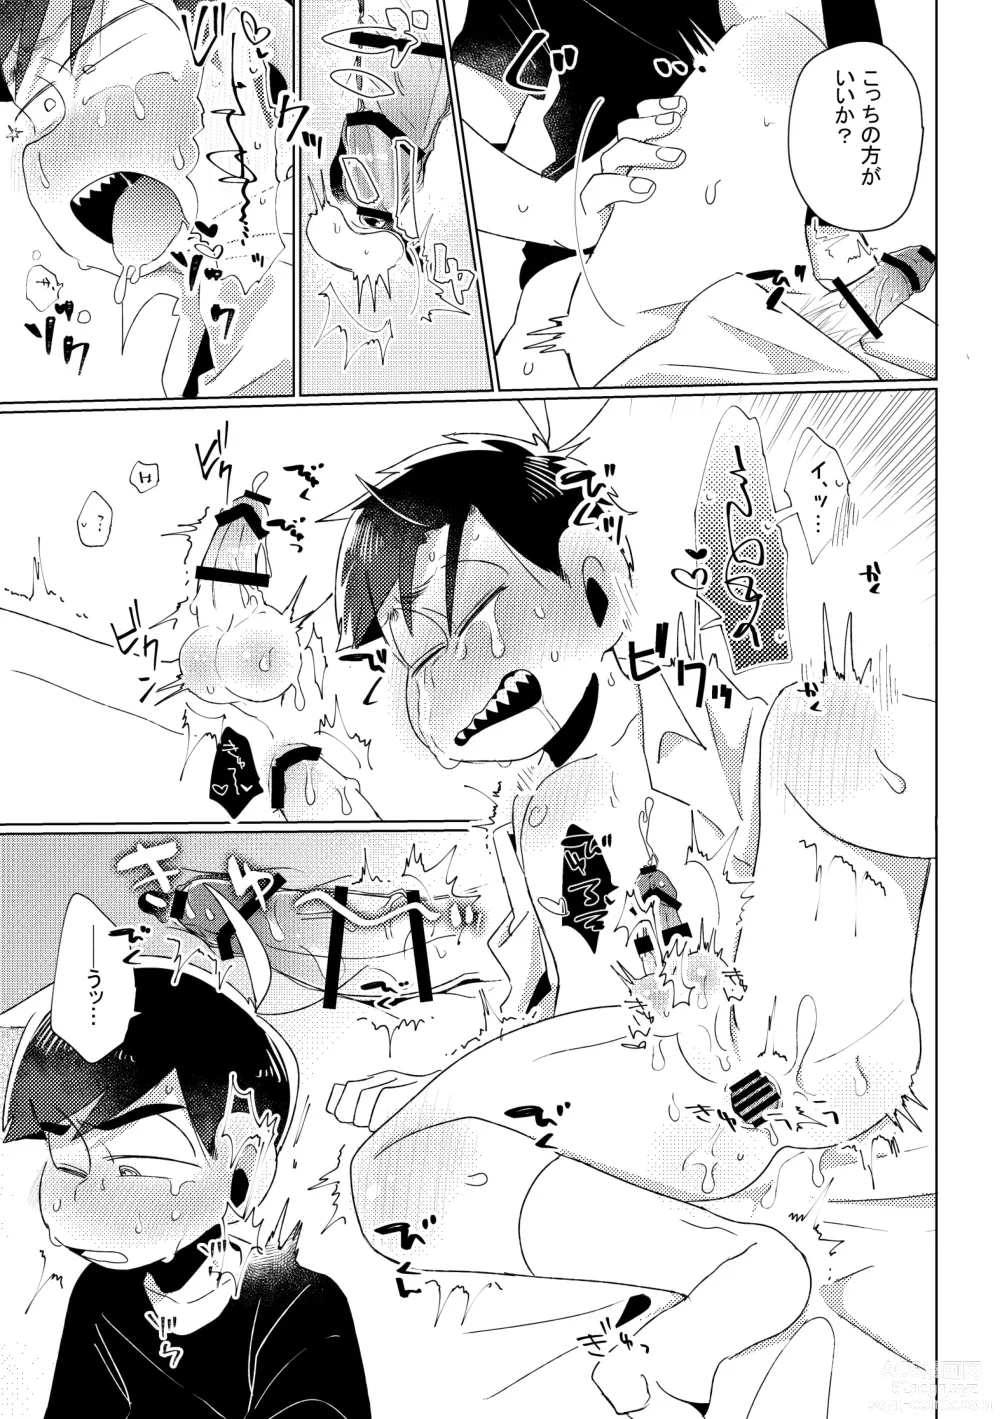 Page 38 of doujinshi Aperitif